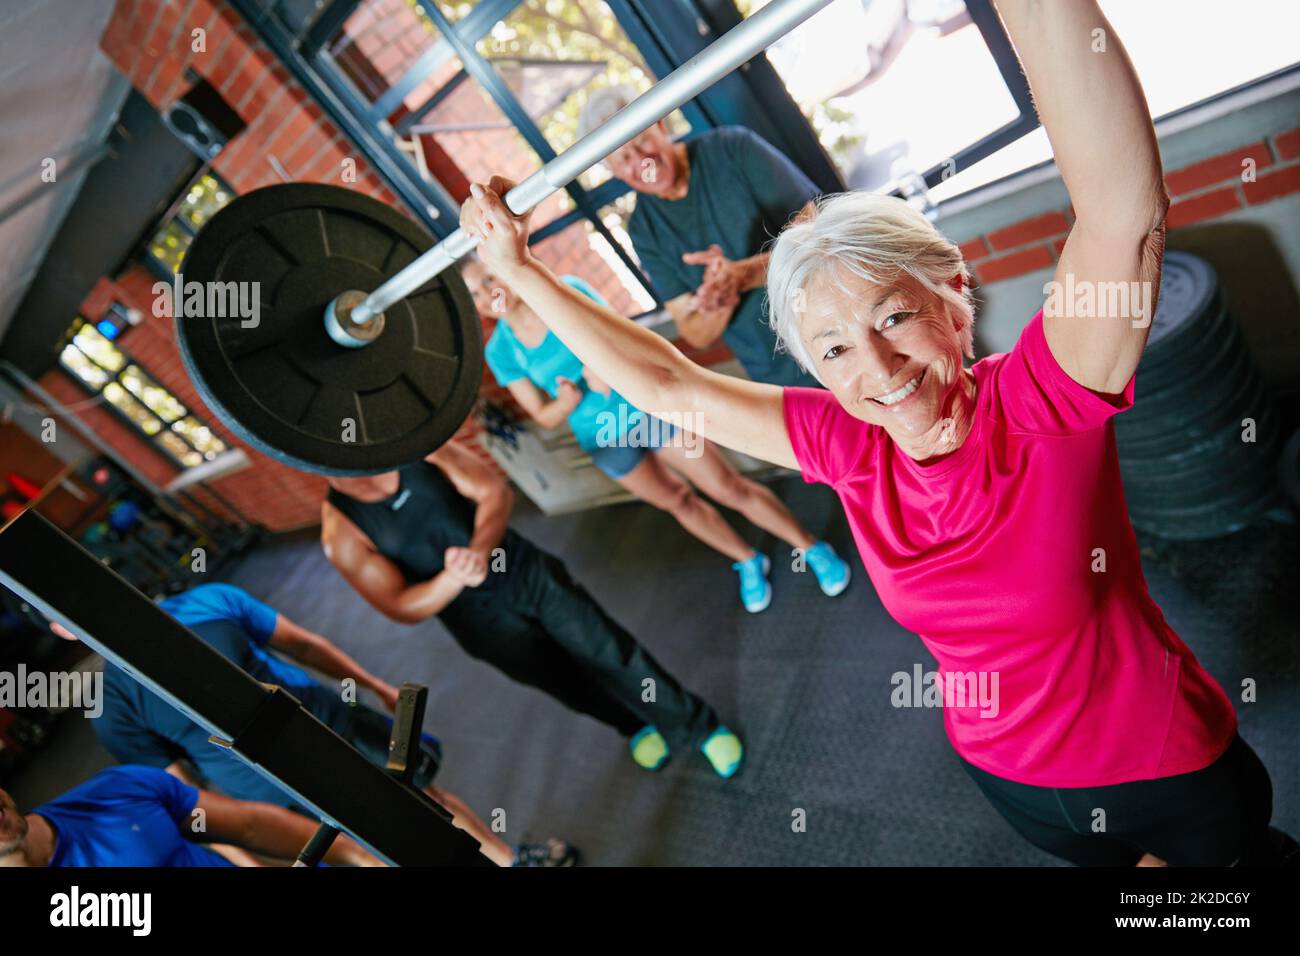 Es wird nicht einfacher, Sie werden stärker. Aufnahme einer älteren Frau, die Gewichte hebt, während eine Gruppe von Personen im Hintergrund zuschaut. Stockfoto